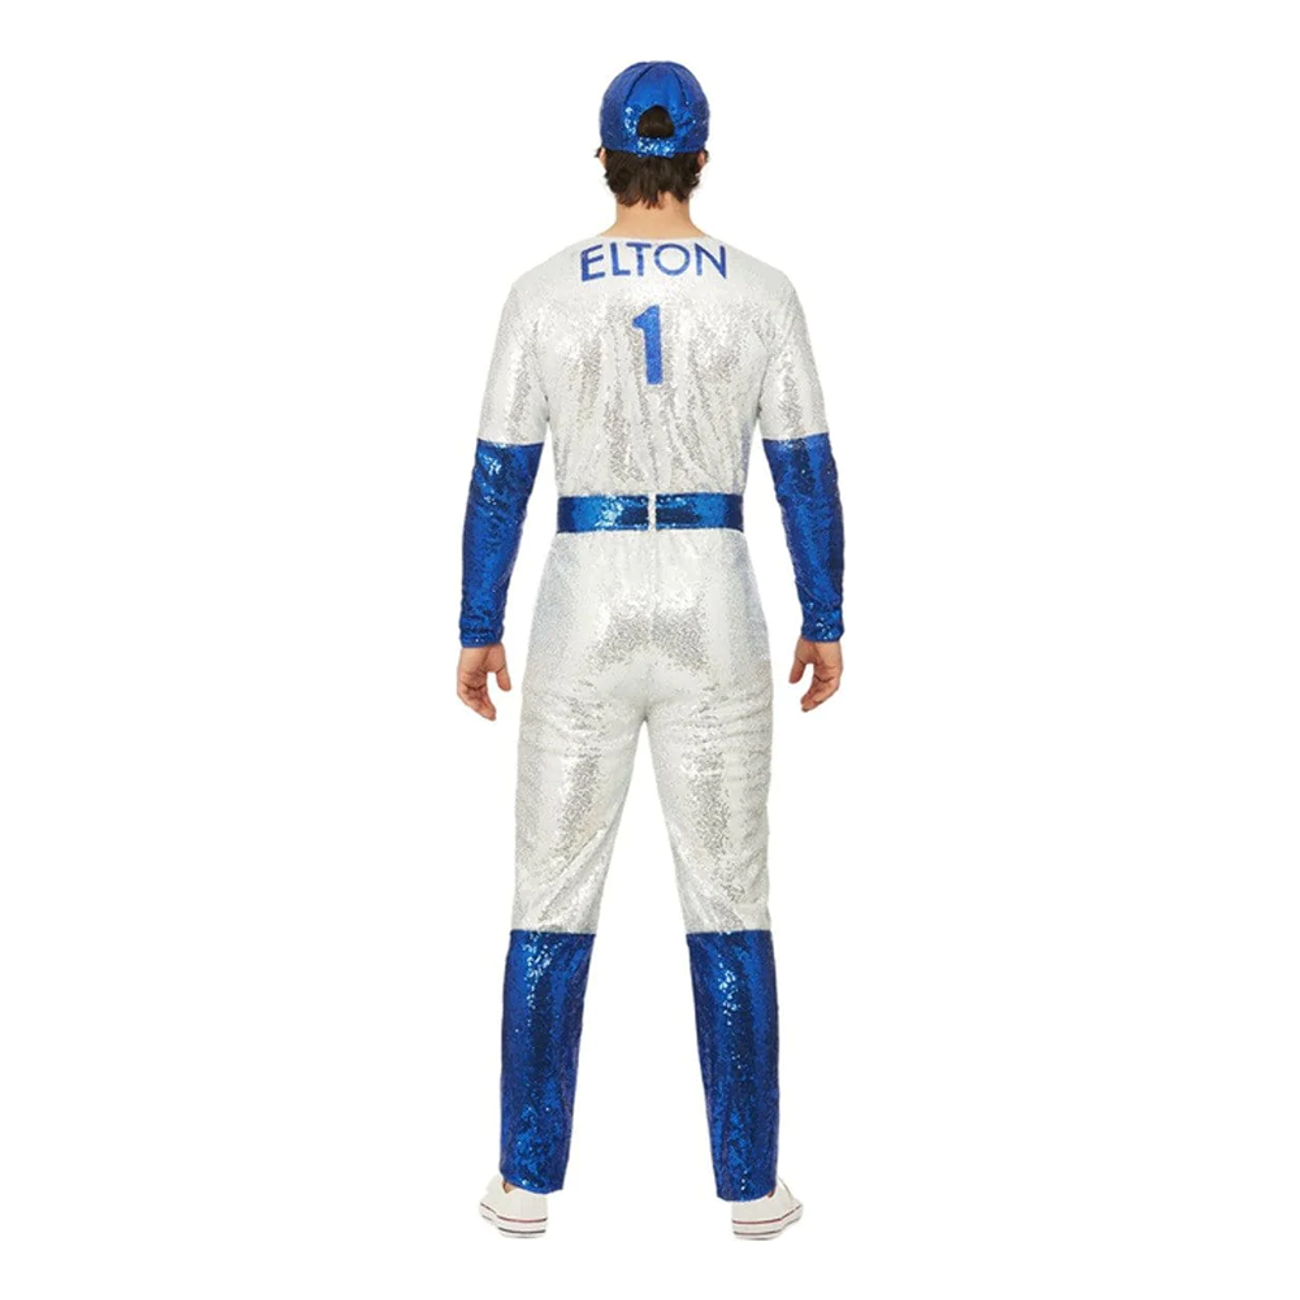 elton-john-basebollspelare-deluxe-maskeraddrakt-88218-2